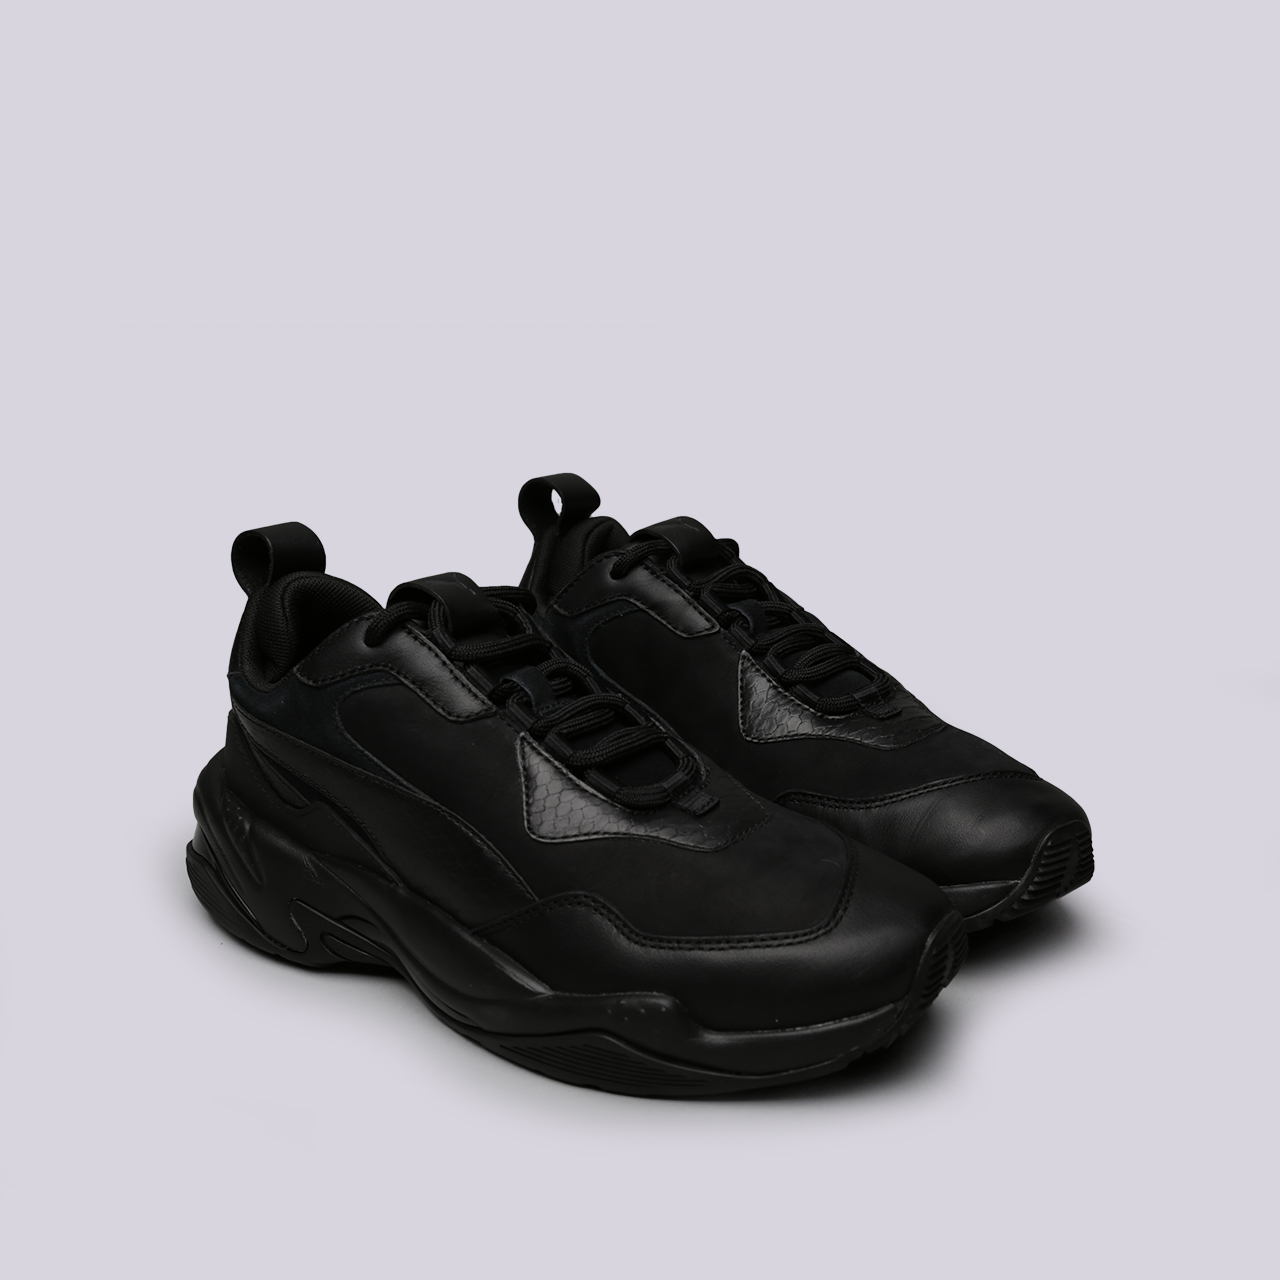 мужские черные кроссовки PUMA Thunder Desert 36799704 - цена, описание, фото 3